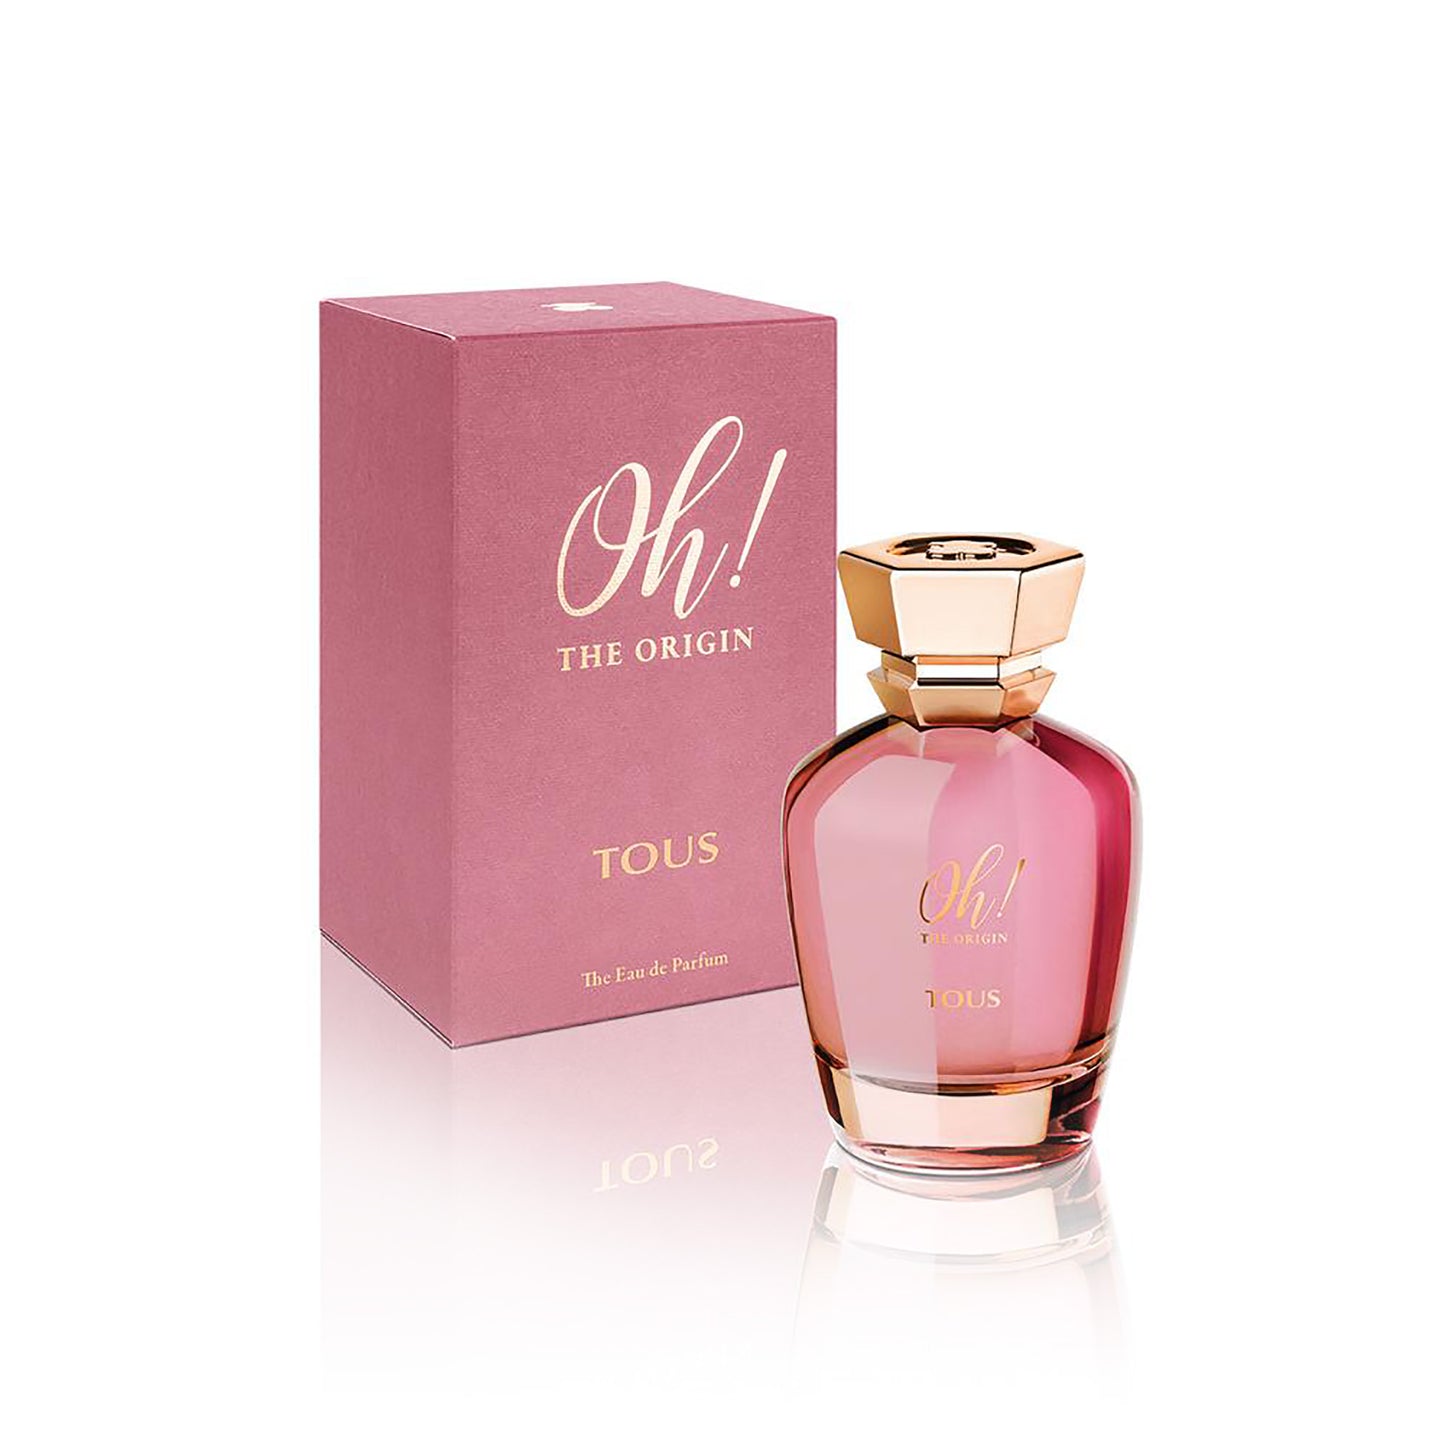 Oh! The Origin 3.4 oz Eau de Parfum